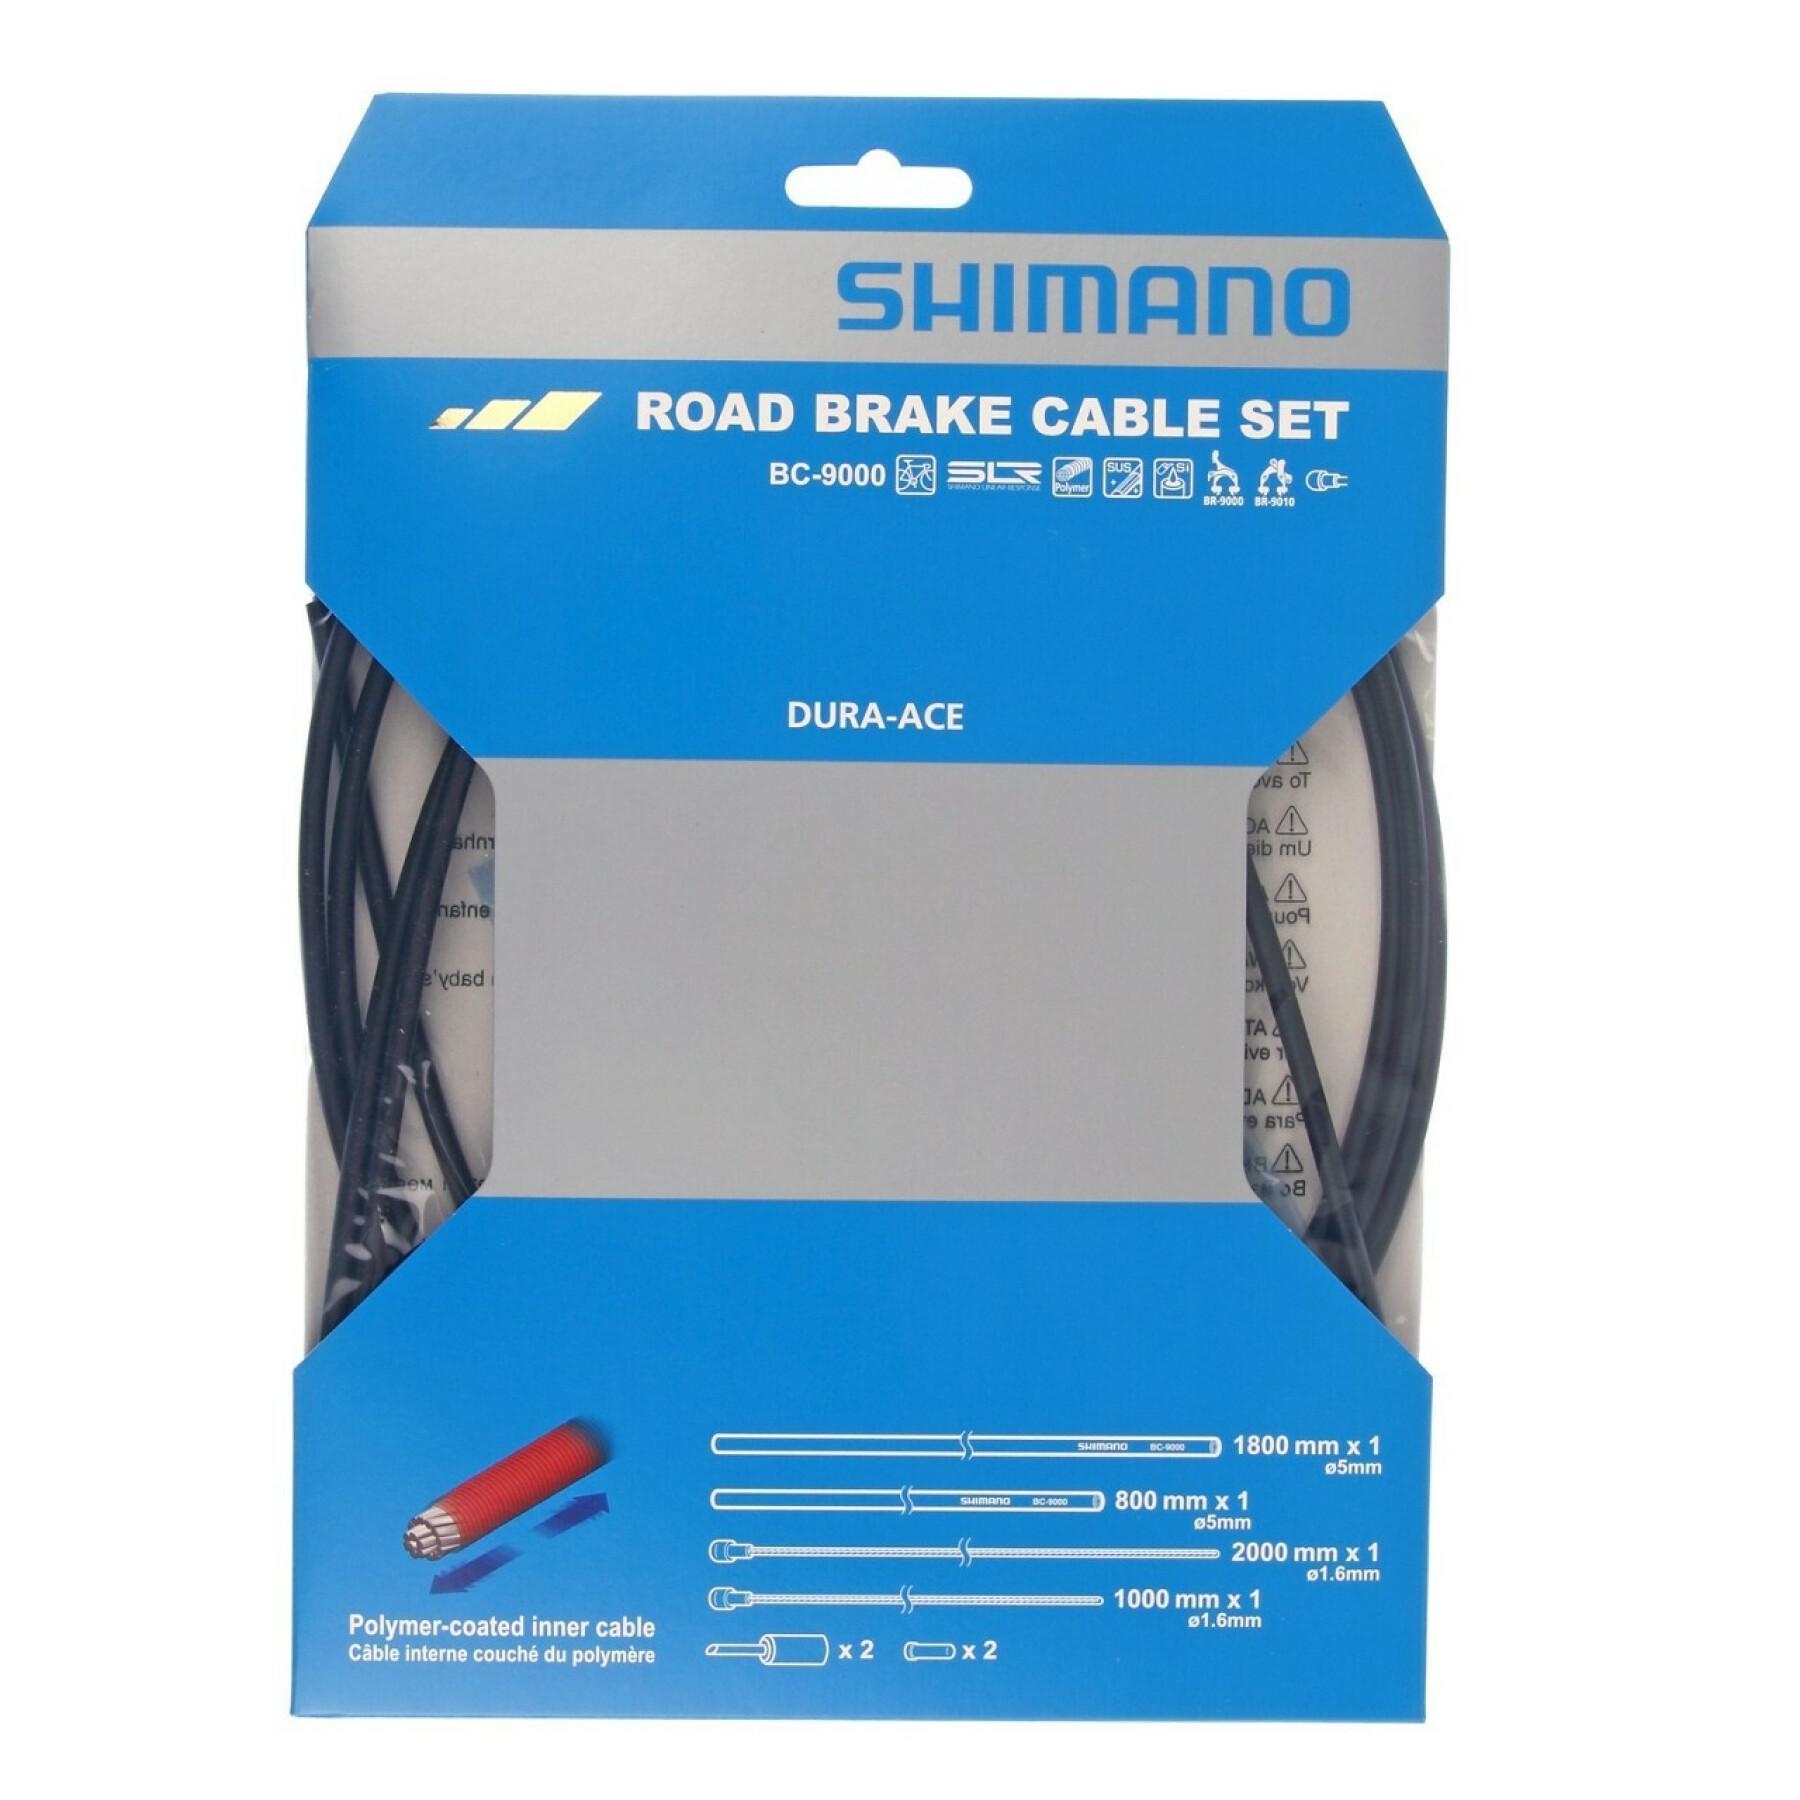 Juegos de cables de freno con revestimiento de polímero Shimano BC-9000